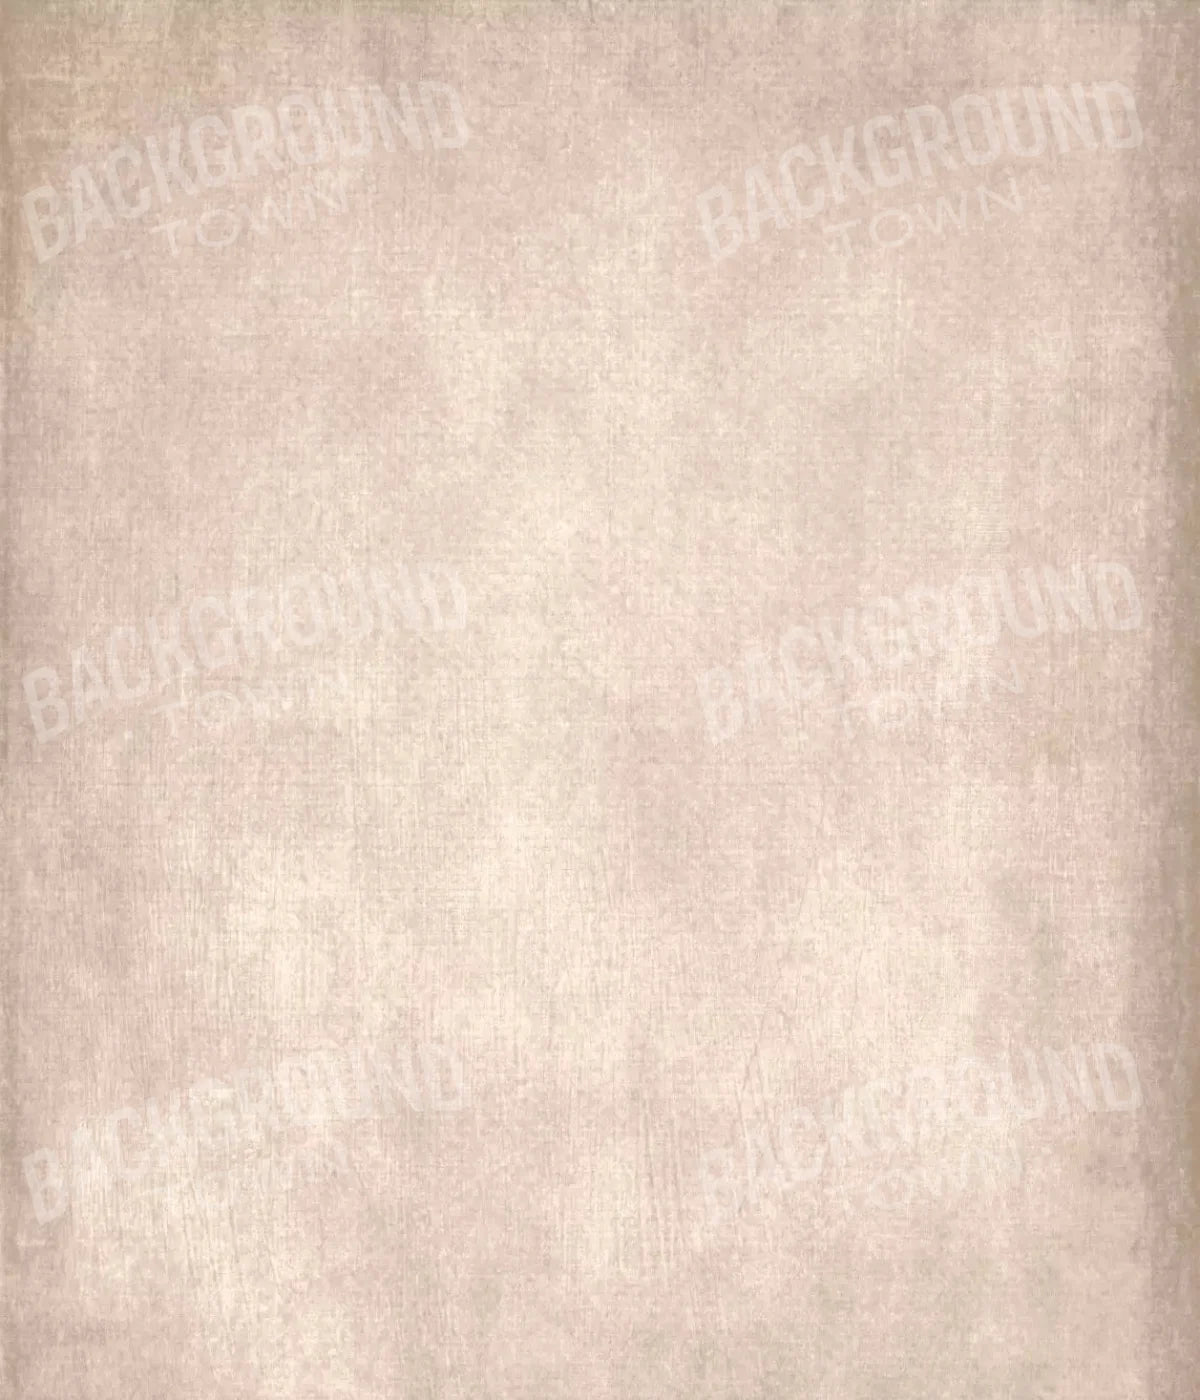 Daydream Cream 10X12 Ultracloth ( 120 X 144 Inch ) Backdrop